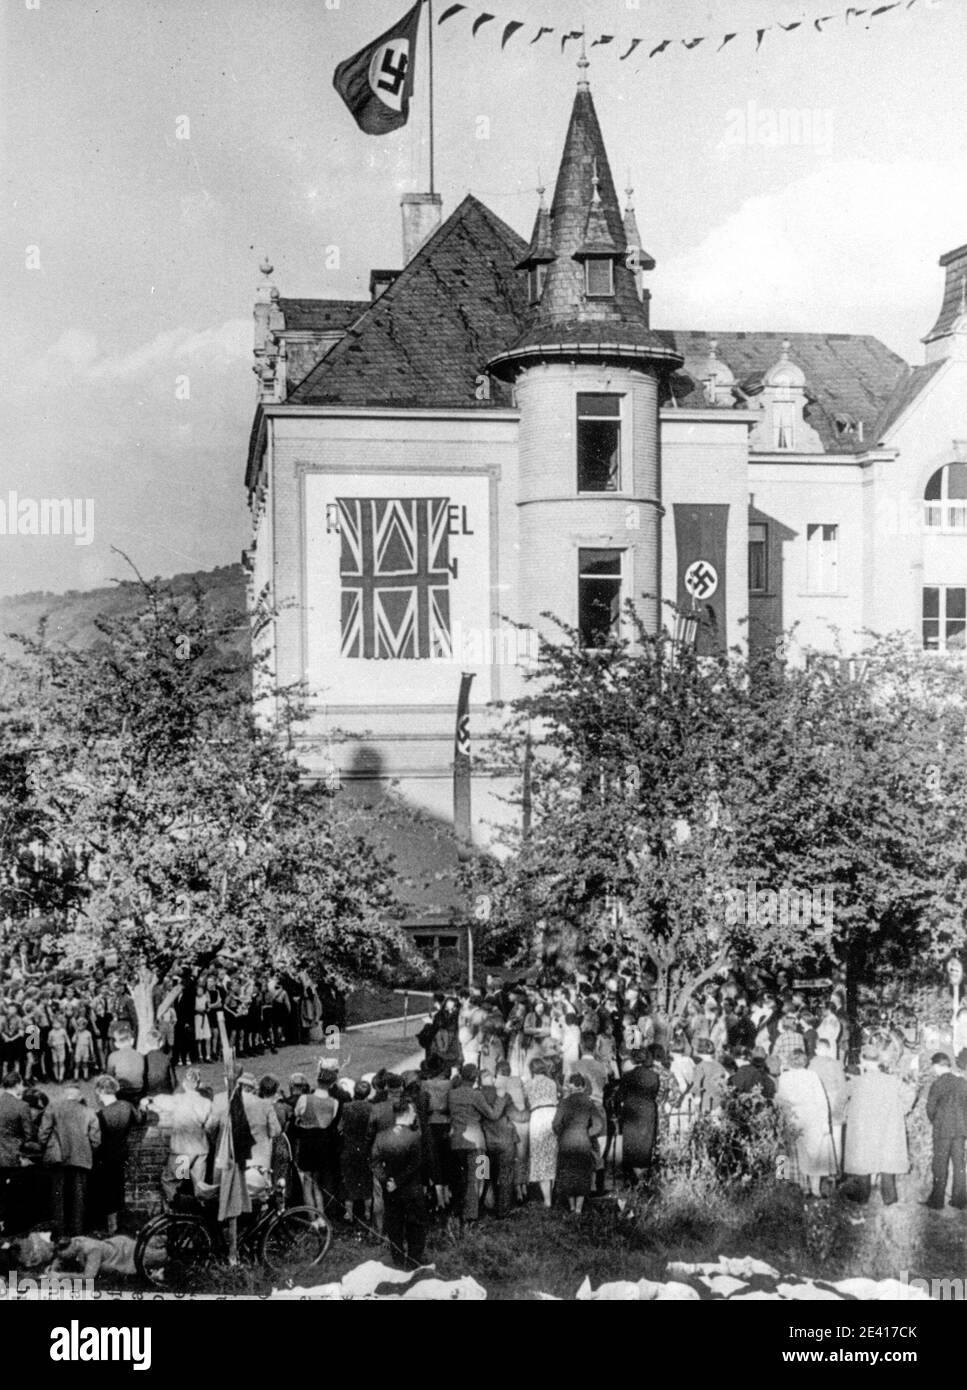 L'hôtel Dreeson de Bad Godesberg est festooné avec des drapeaux britanniques et nazis en préparation à la rencontre entre Neville Chamberlain, le Premier ministre britannique, et Adolf Hitler en relation avec les exigences d'Hitler sur la Zakoslovakia. Hitler souhaitait annexer les Sudètes à la Tchécoslovaquie. Banque D'Images